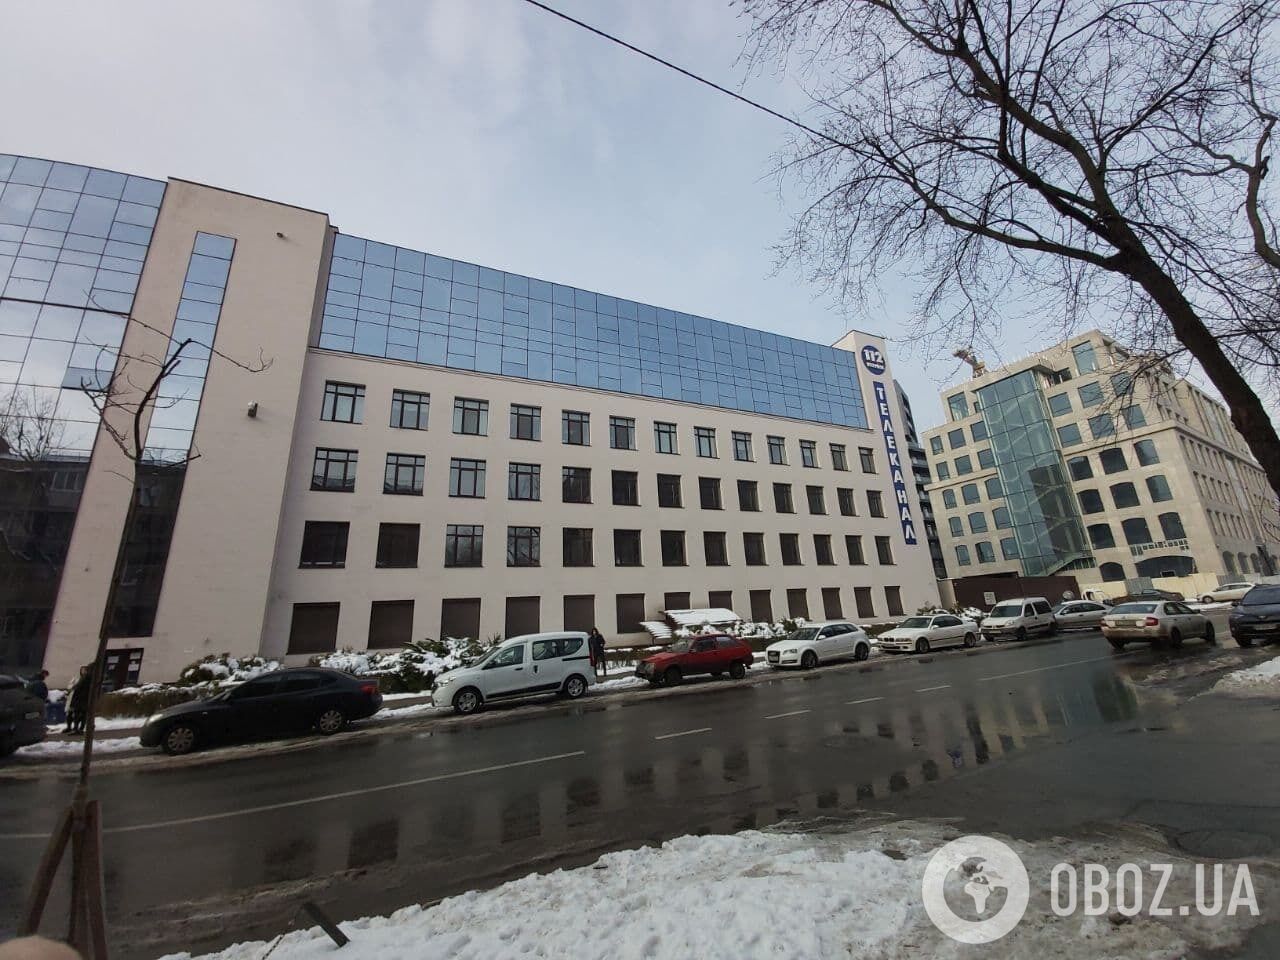 Офис "112 Украина".